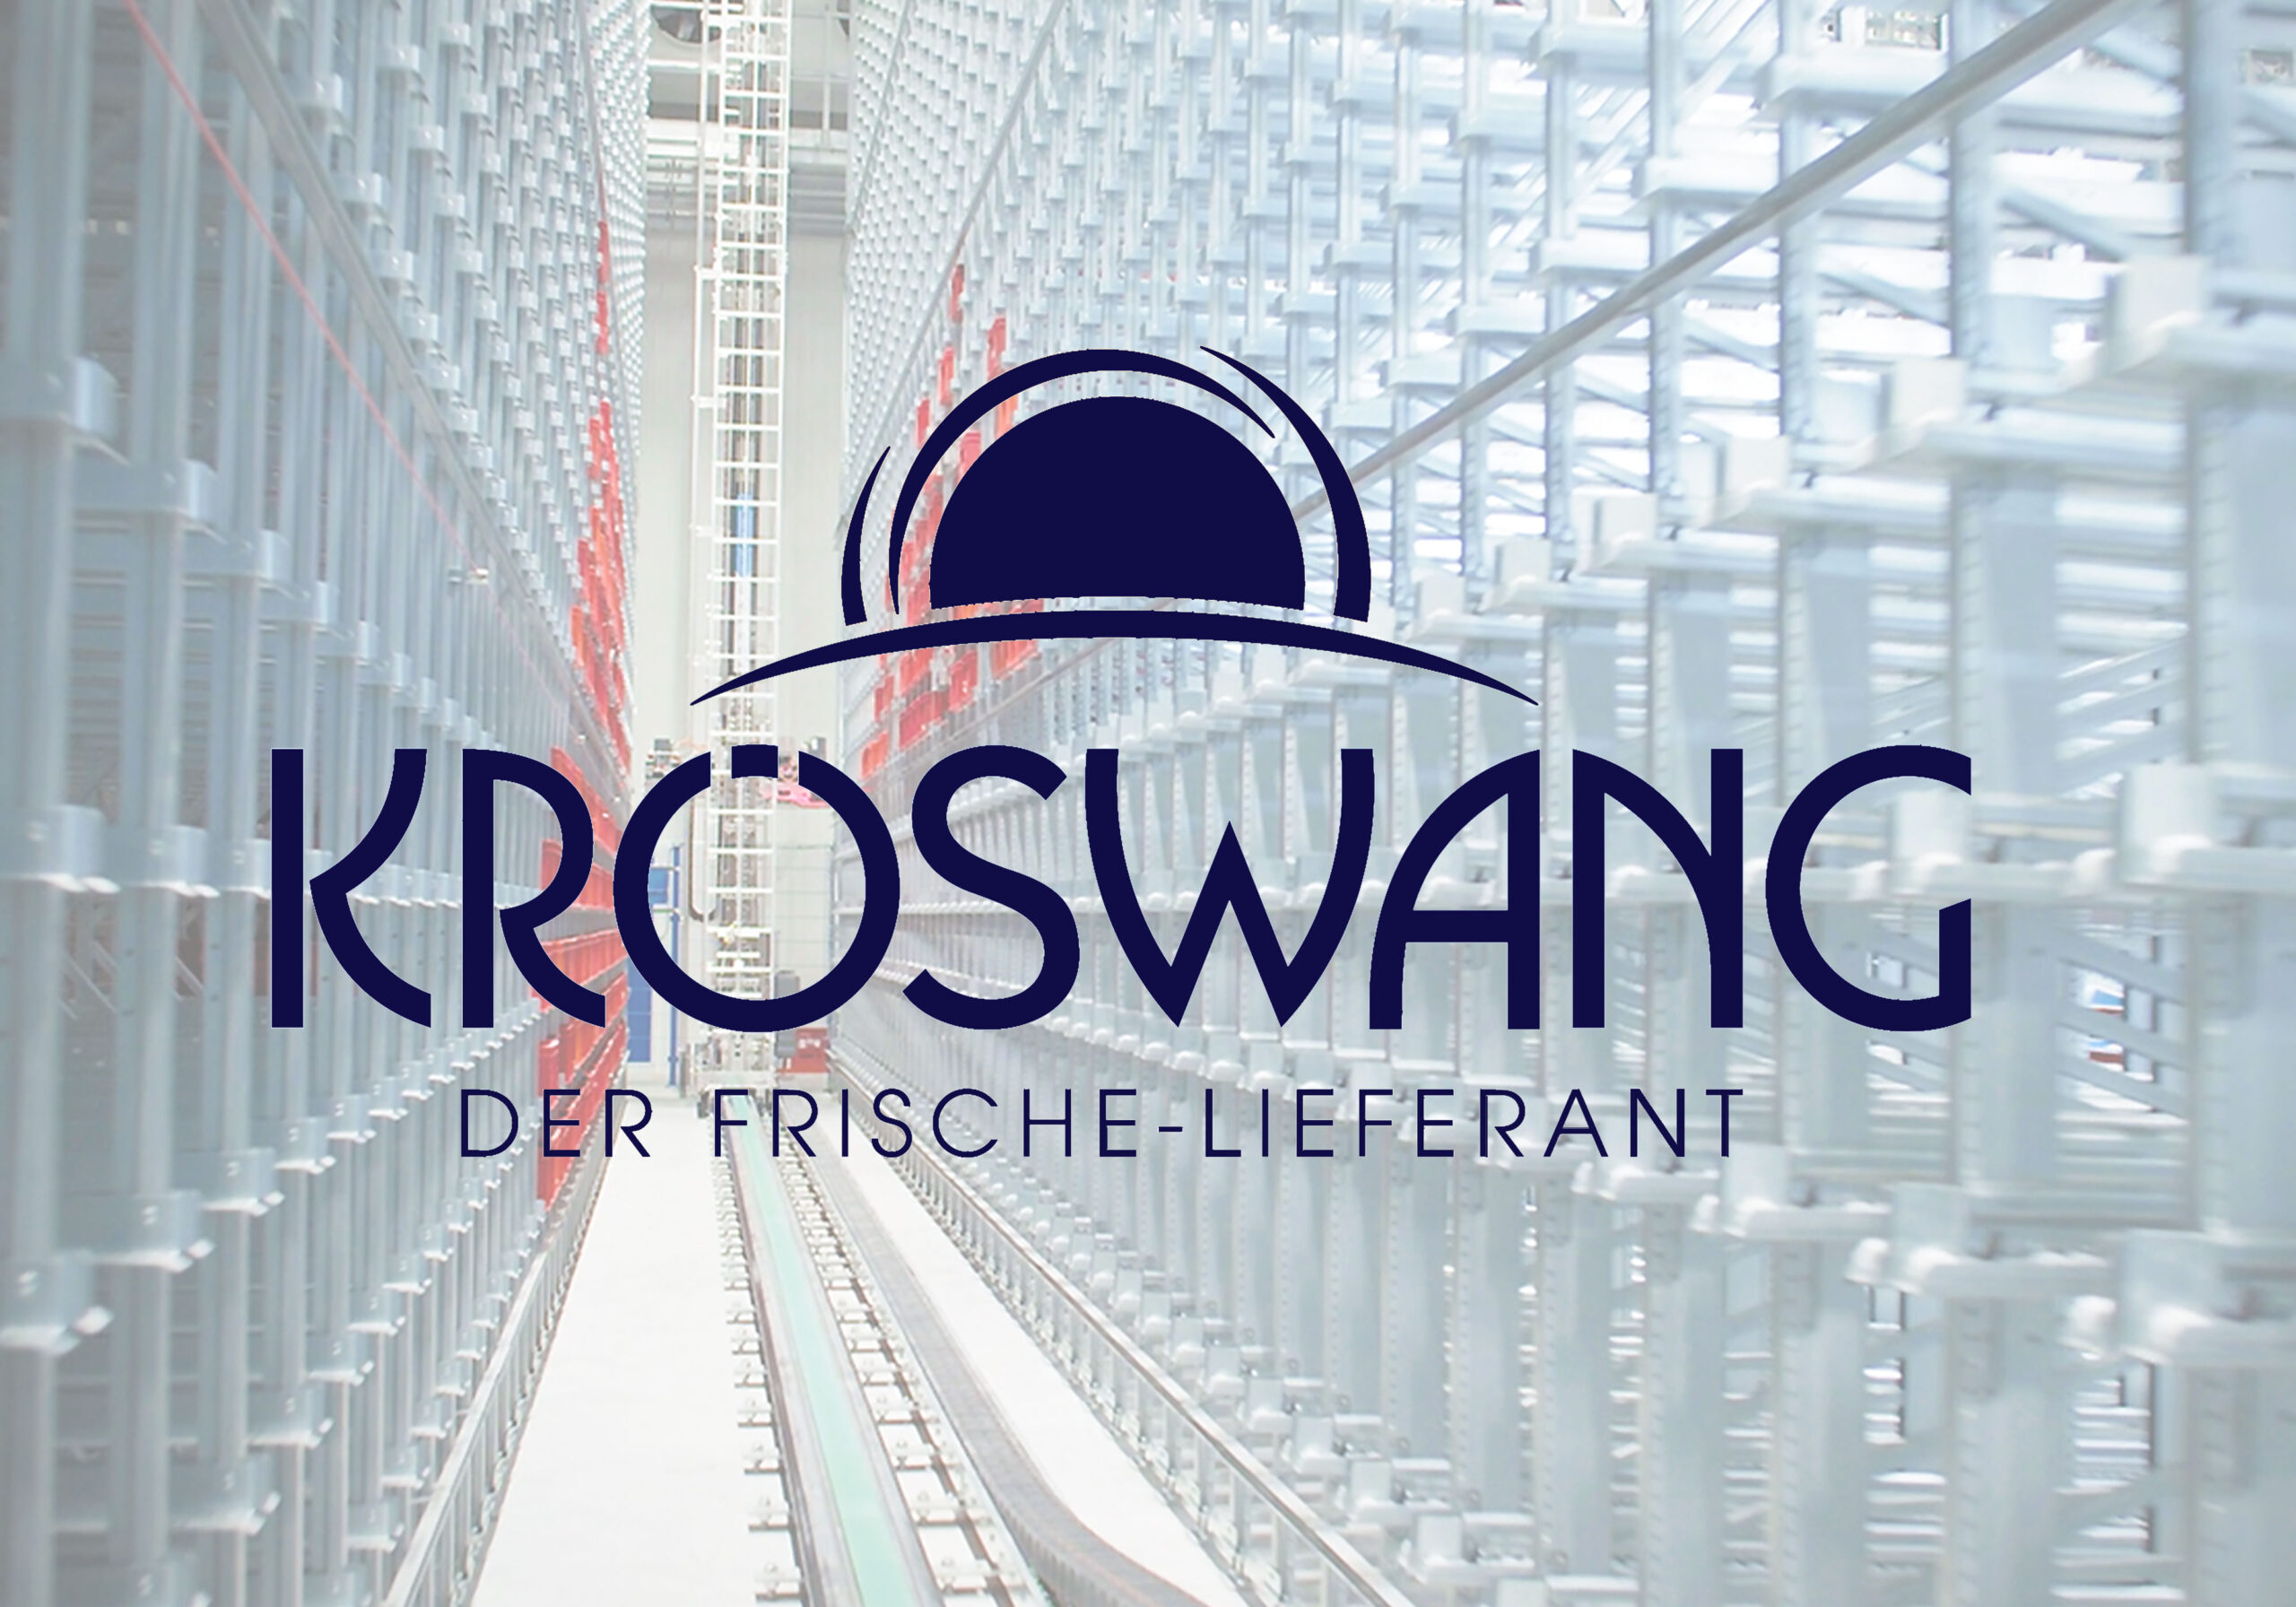 kroeswang